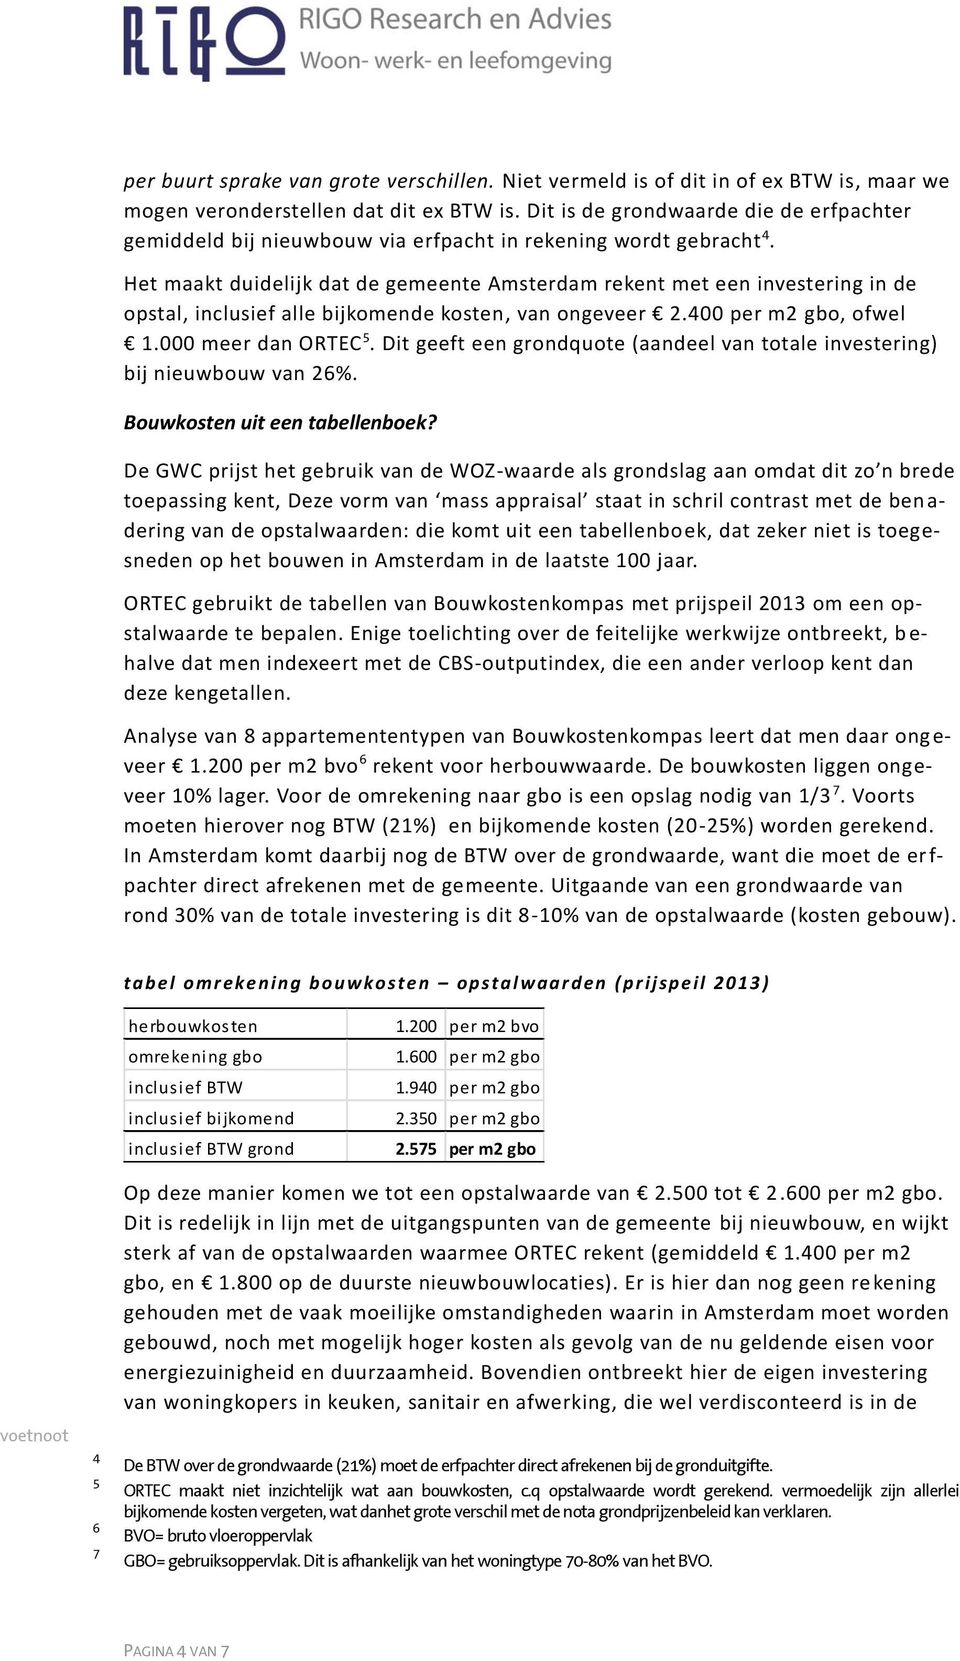 Het maakt duidelijk dat de gemeente Amsterdam rekent met een investering in de opstal, inclusief alle bijkomende kosten, van ongeveer 2.400 per m2 gbo, ofwel 1.000 meer dan ORTEC 5.